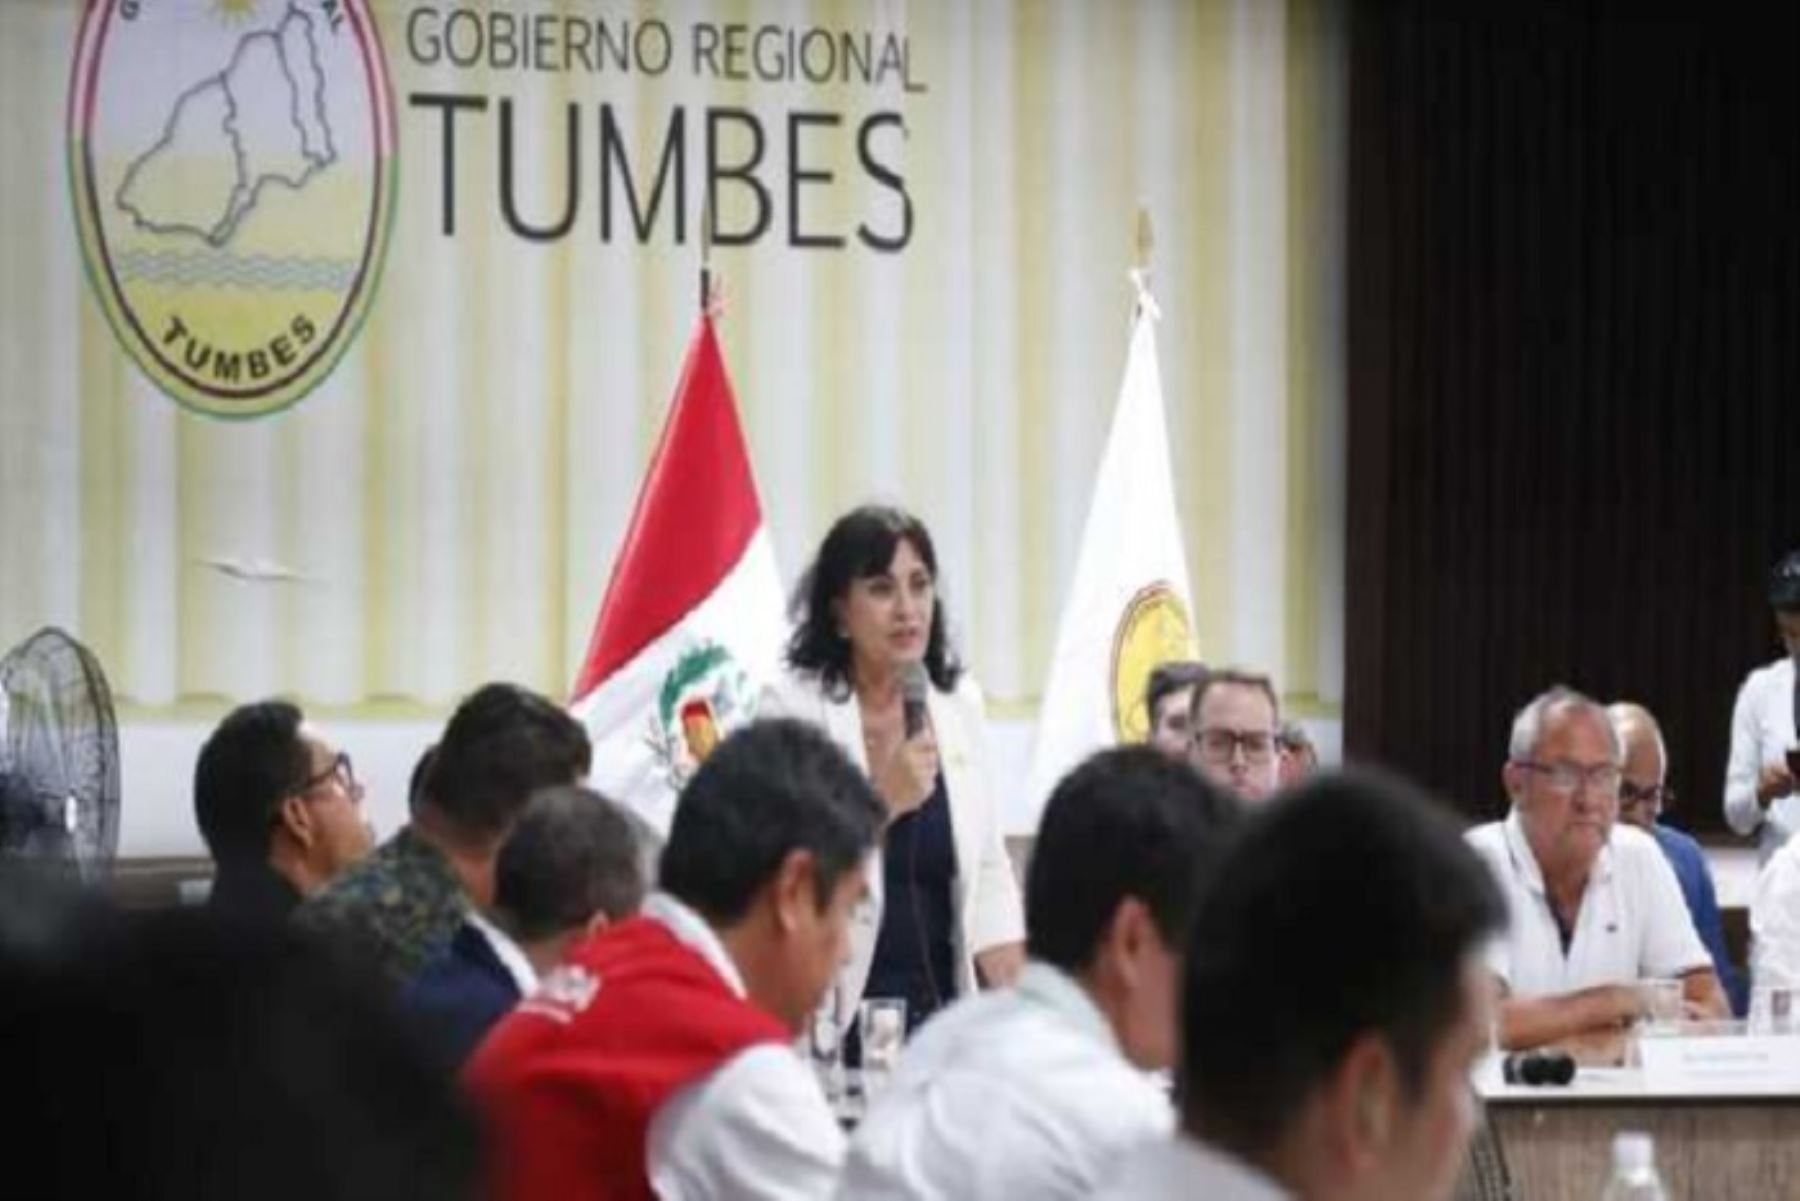 La viceministra de Salud Pública, María Elena Aguilar, cumplió una agenda de trabajo en la región Tumbes, con el fin de fortalecer el sistema sanitario.